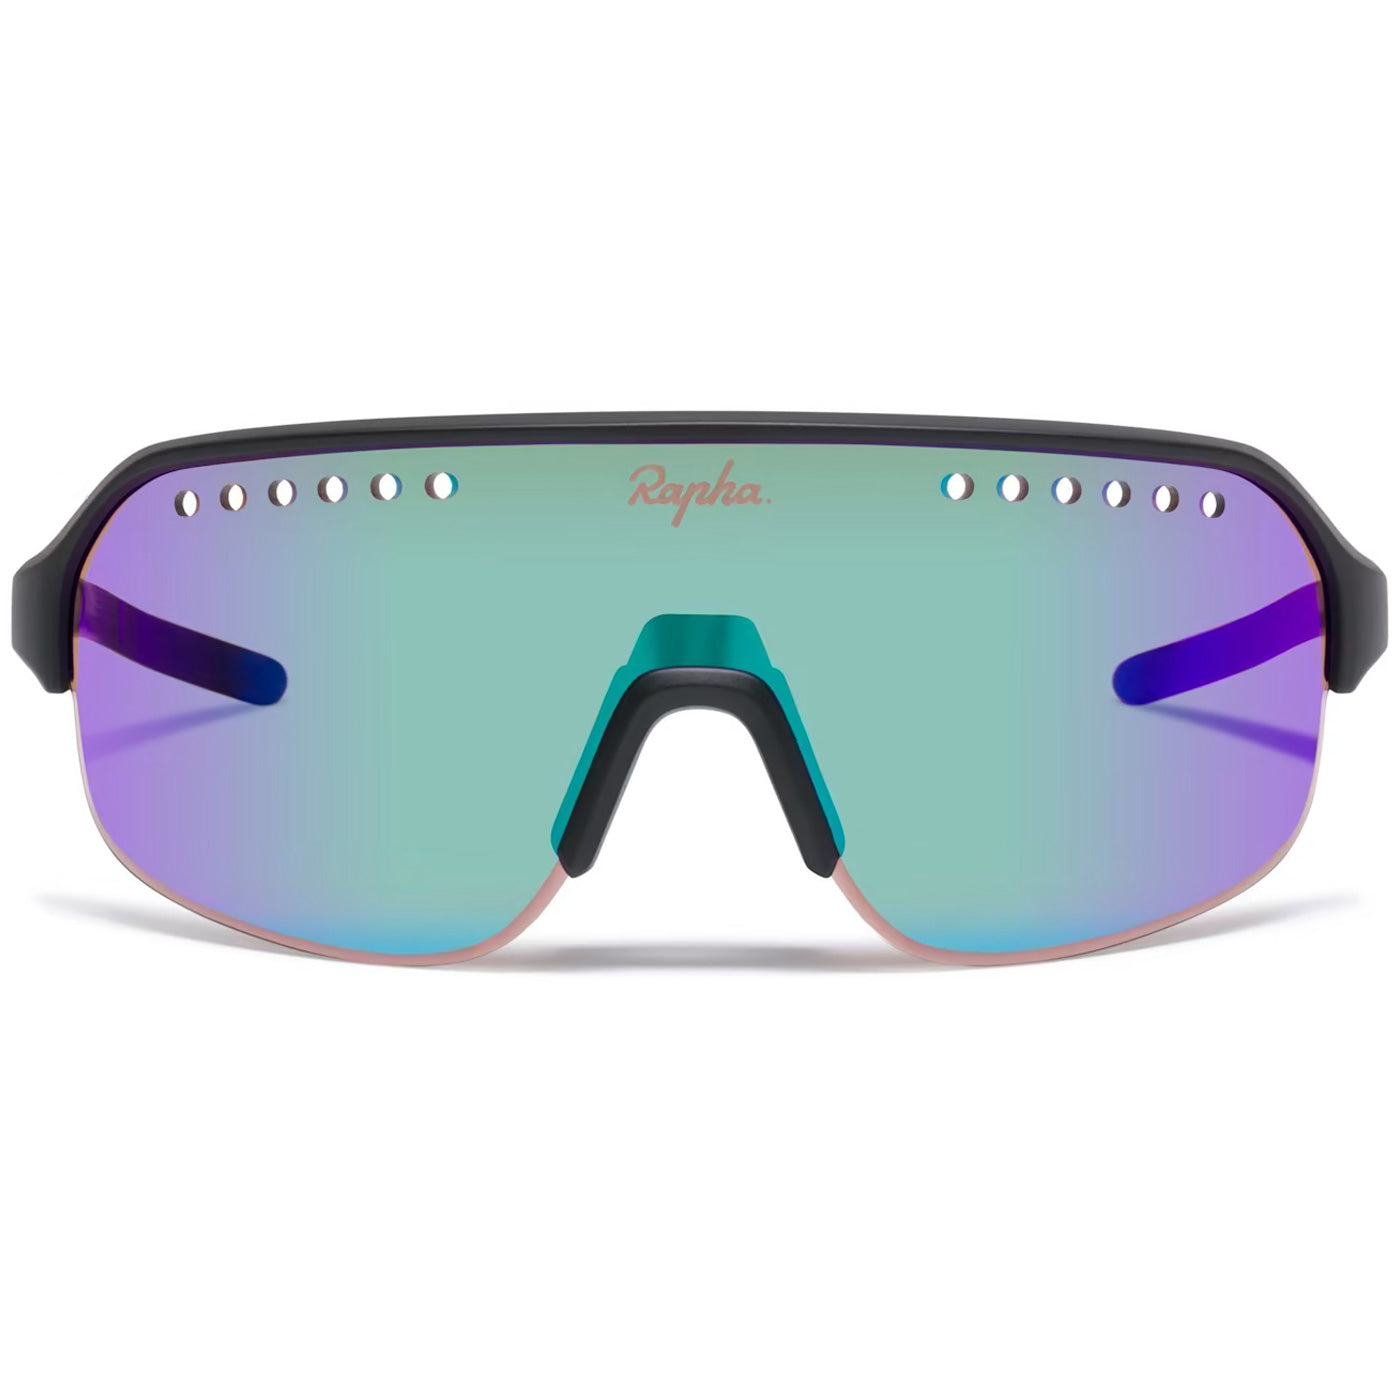 Rapha Explore brille - Dark Navy Purple Green